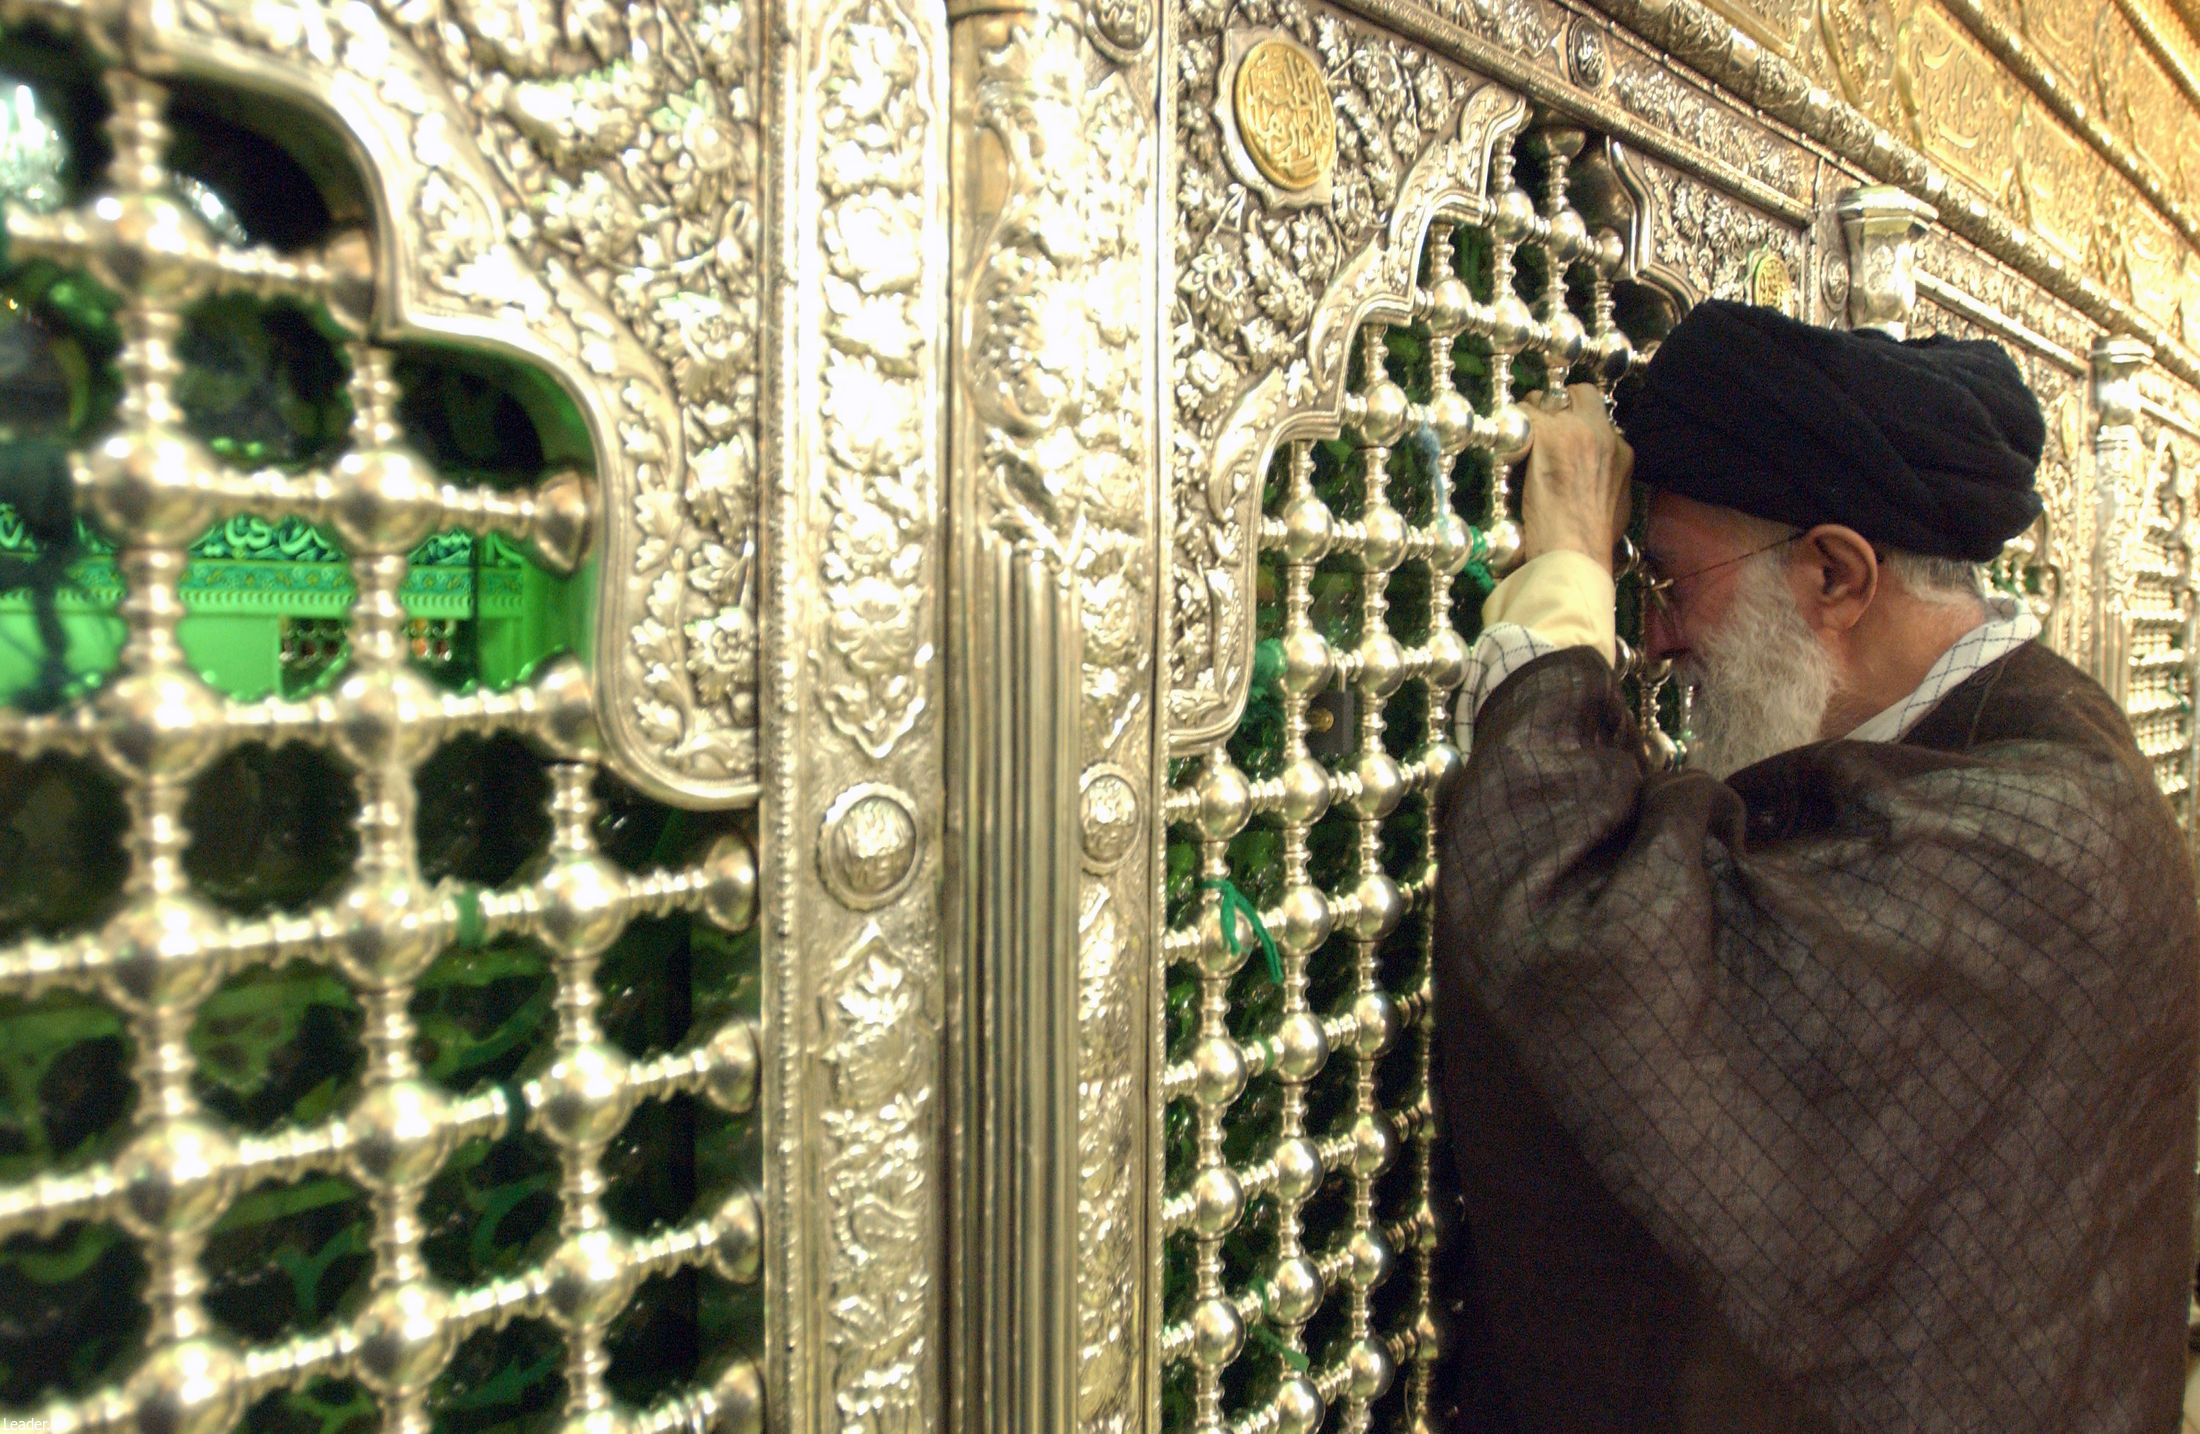 Immagini visite Guida Suprema a mausoleo di Fatima Masumeh (AS)